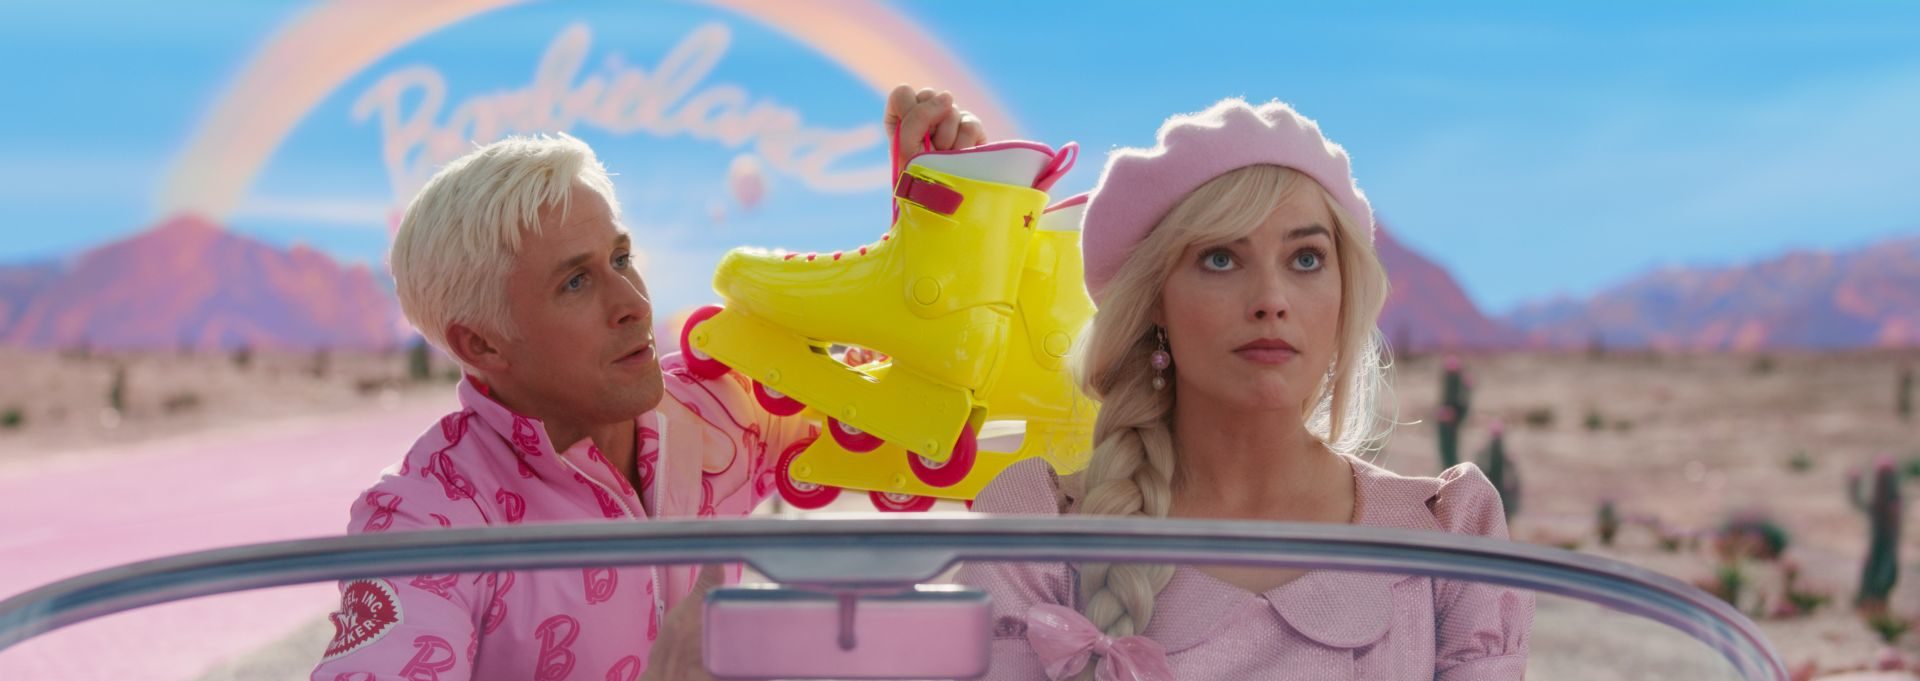 Barbie-Trailer zeigt neues und farbenfrohes Bildmaterial